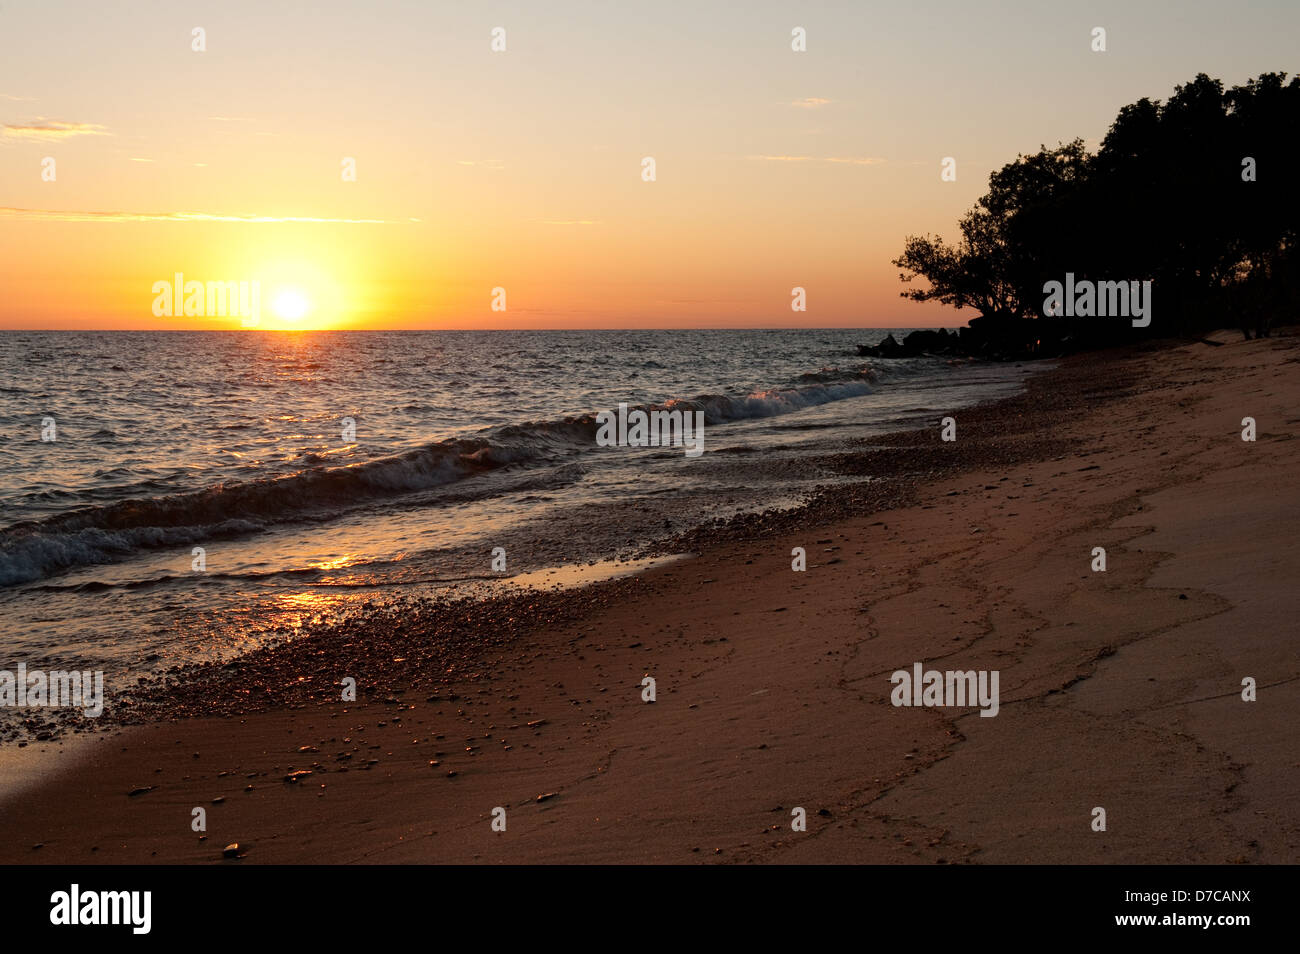 beach at sunset, lake Niassa, Mozambique Stock Photo